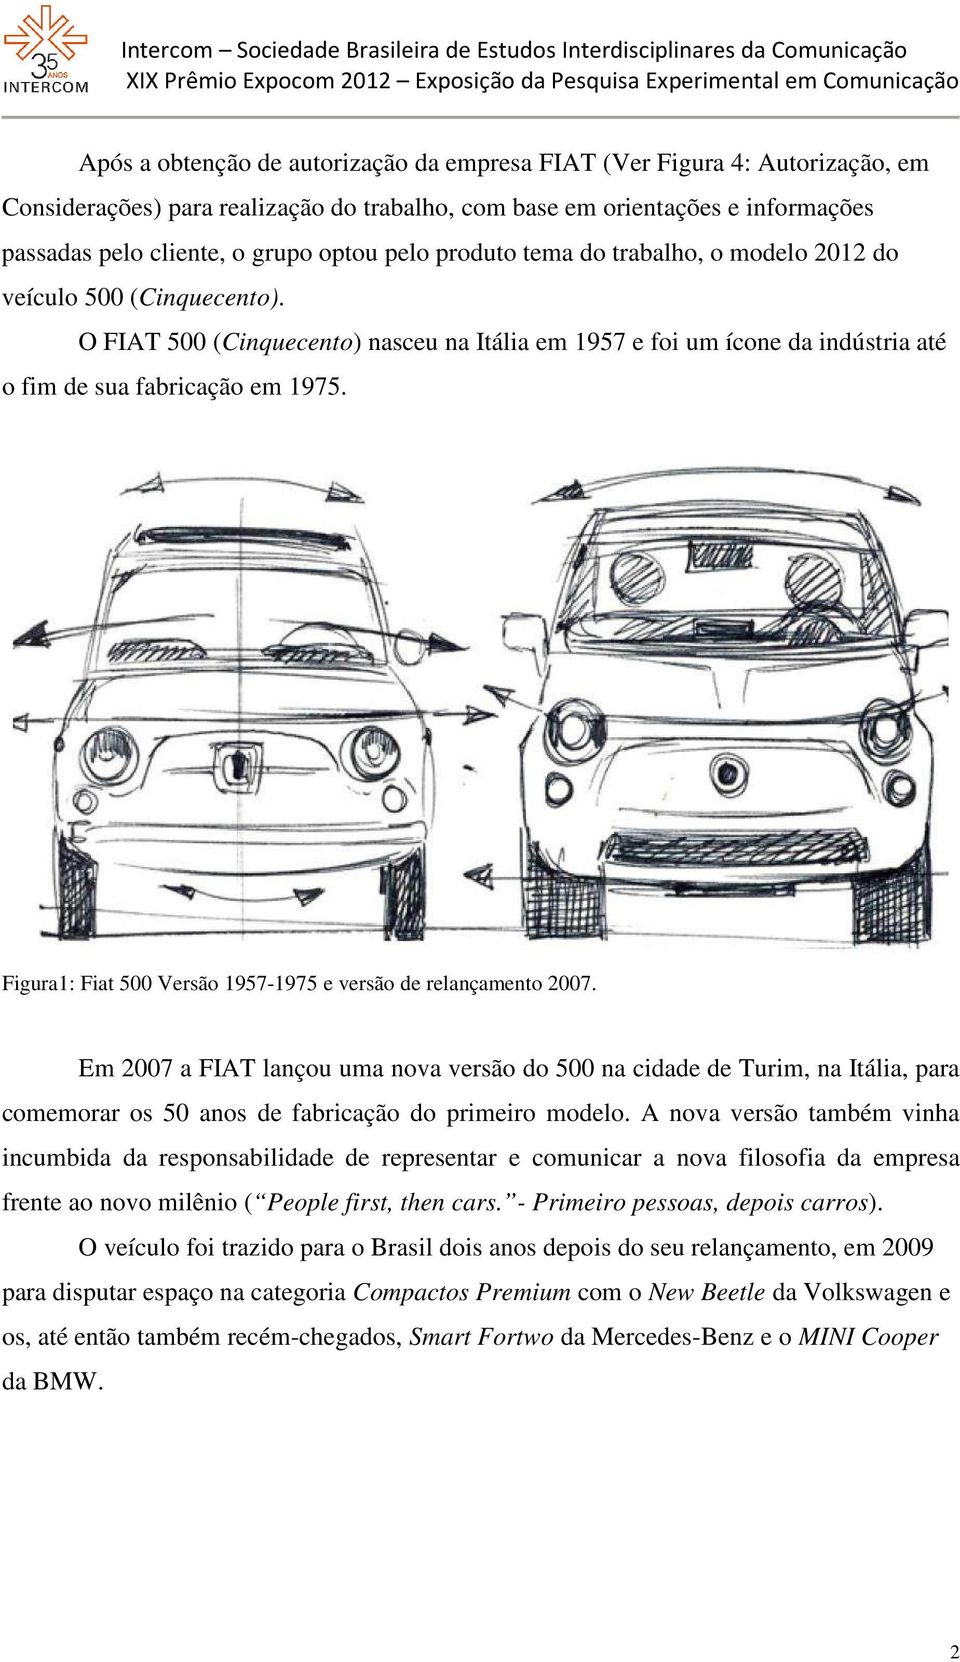 Figura1: Fiat 500 Versão 1957-1975 e versão de relançamento 2007.